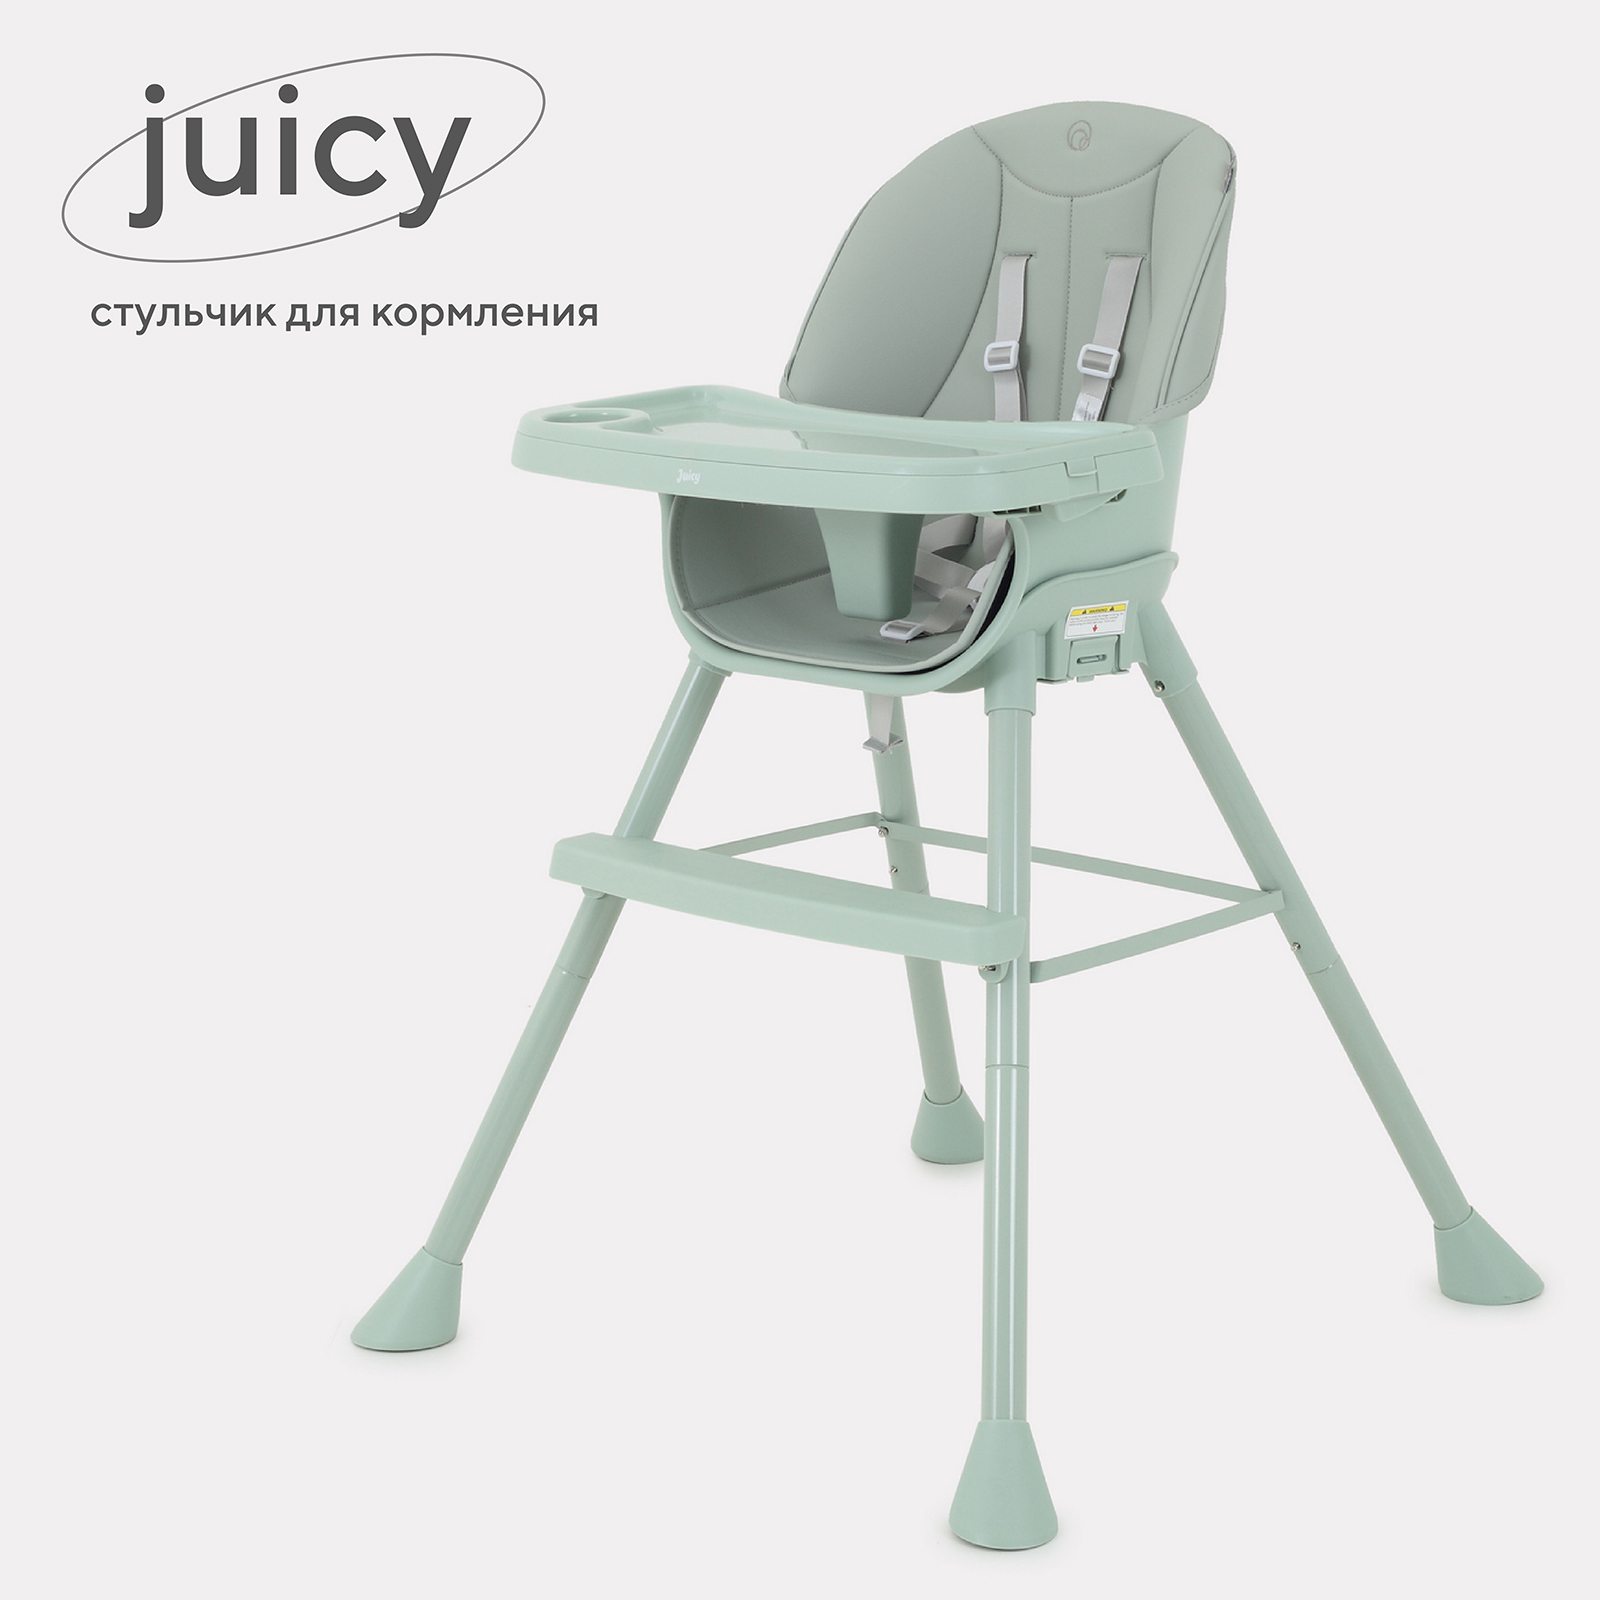 Стульчик для кормления RANT Juicy RH160 Ocean Green стульчик для кормления lunes green forest kids